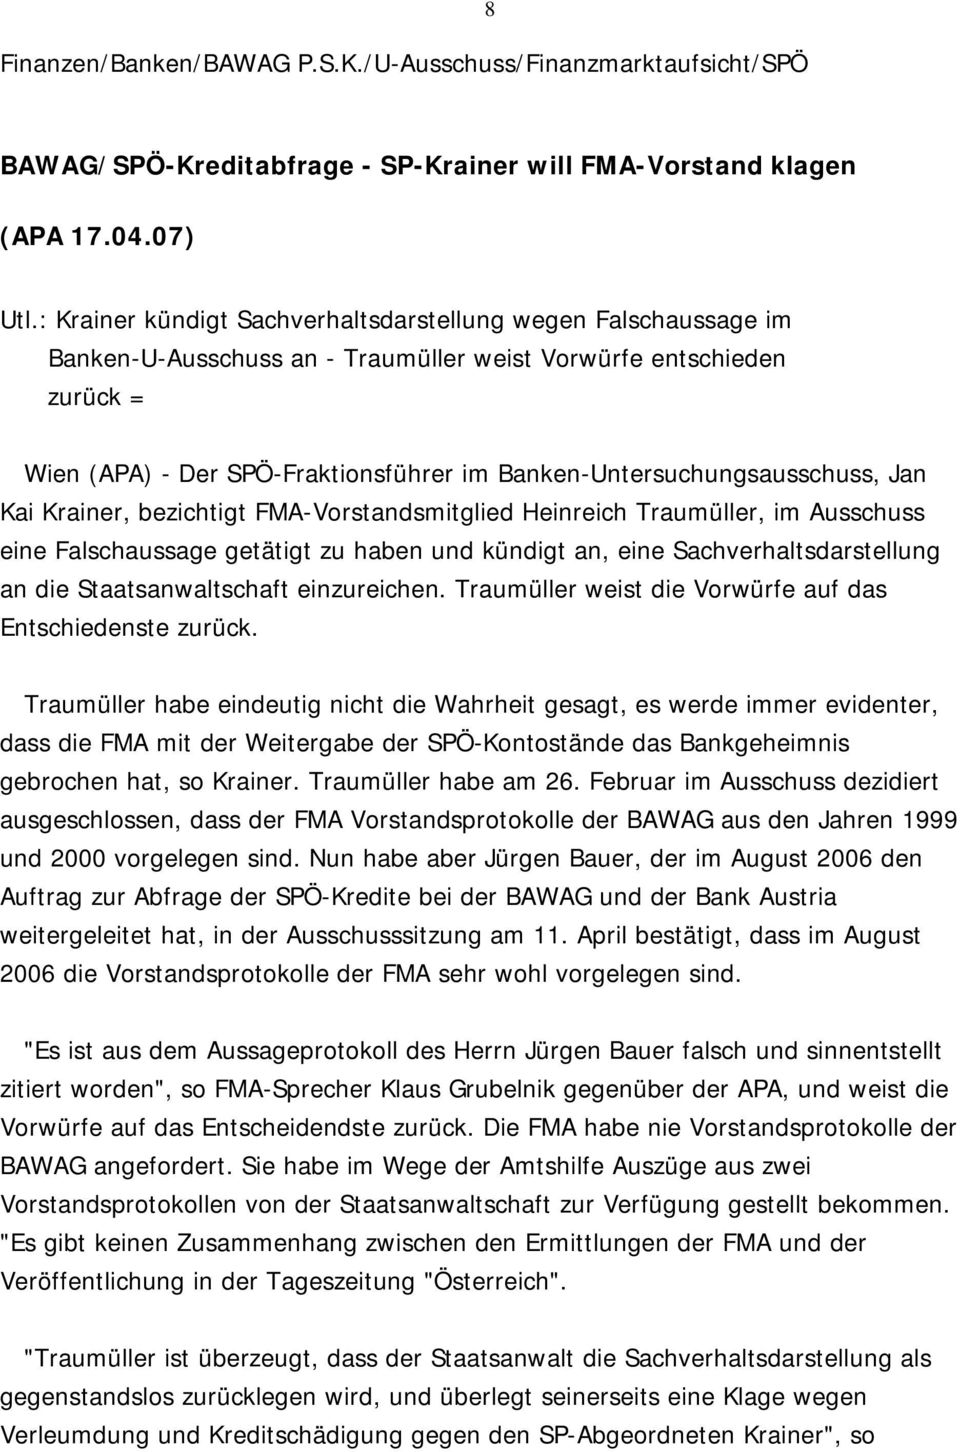 Banken-Untersuchungsausschuss, Jan Kai Krainer, bezichtigt FMA-Vorstandsmitglied Heinreich Traumüller, im Ausschuss eine Falschaussage getätigt zu haben und kündigt an, eine Sachverhaltsdarstellung